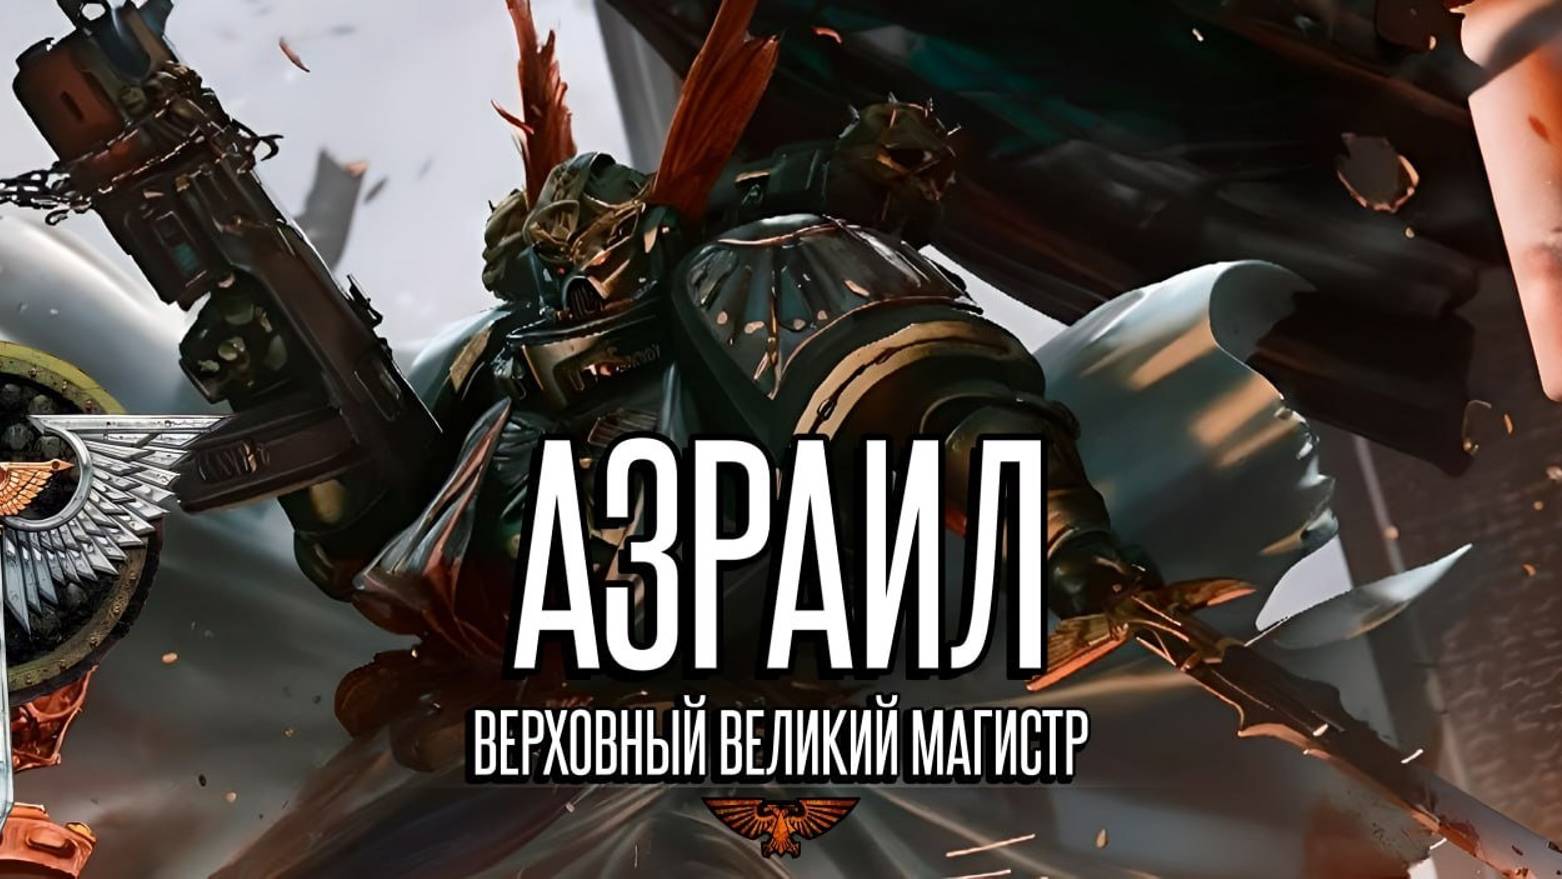 Великий Магистр Азраил | Warhammer 40k